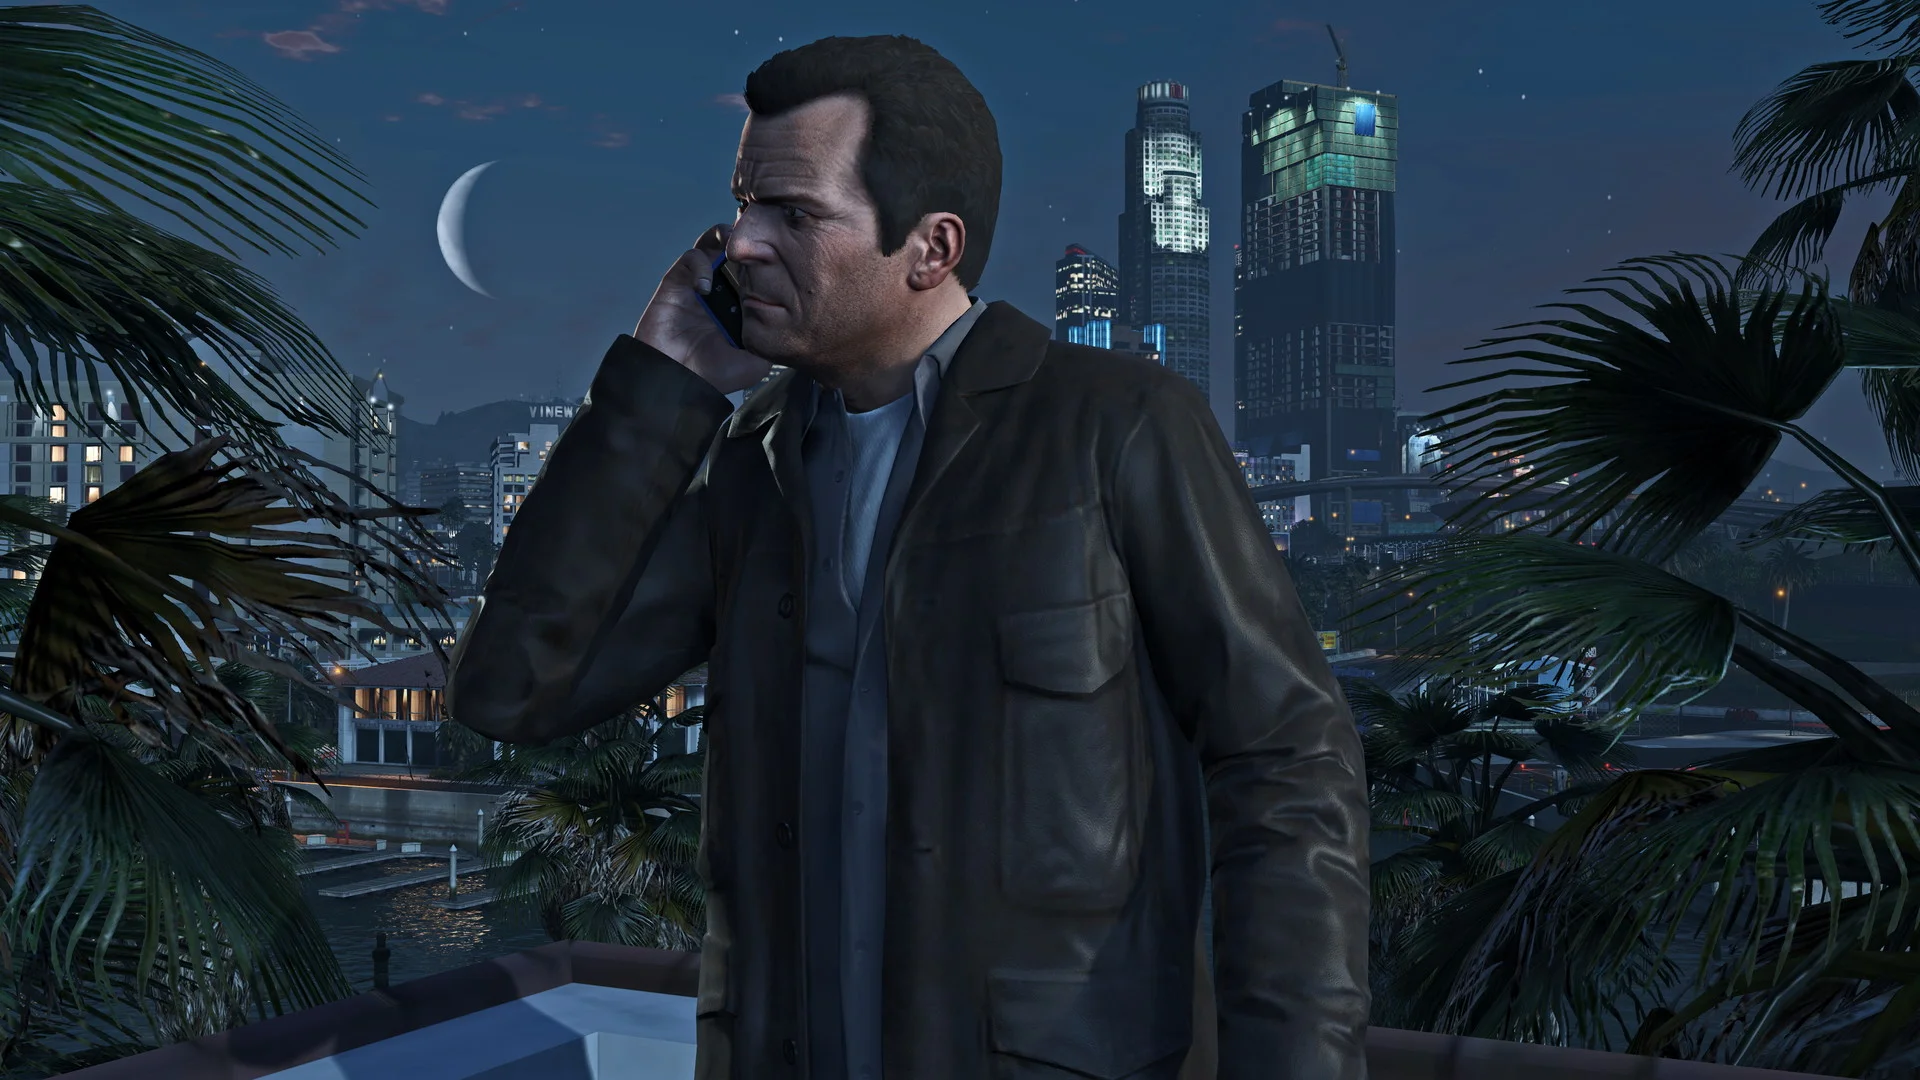 Grand Theft Auto 5 остаётся одной из самых популярных игр даже спустя восемь лет после релиза. За это время игроки изучили игру вдоль и поперёк, но секретов в ней по-прежнему много. Редакция «Канобу» подготовила для вас подборку чит-кодов, которая позволит вернуться в Лос-Сантос во всеоружии.